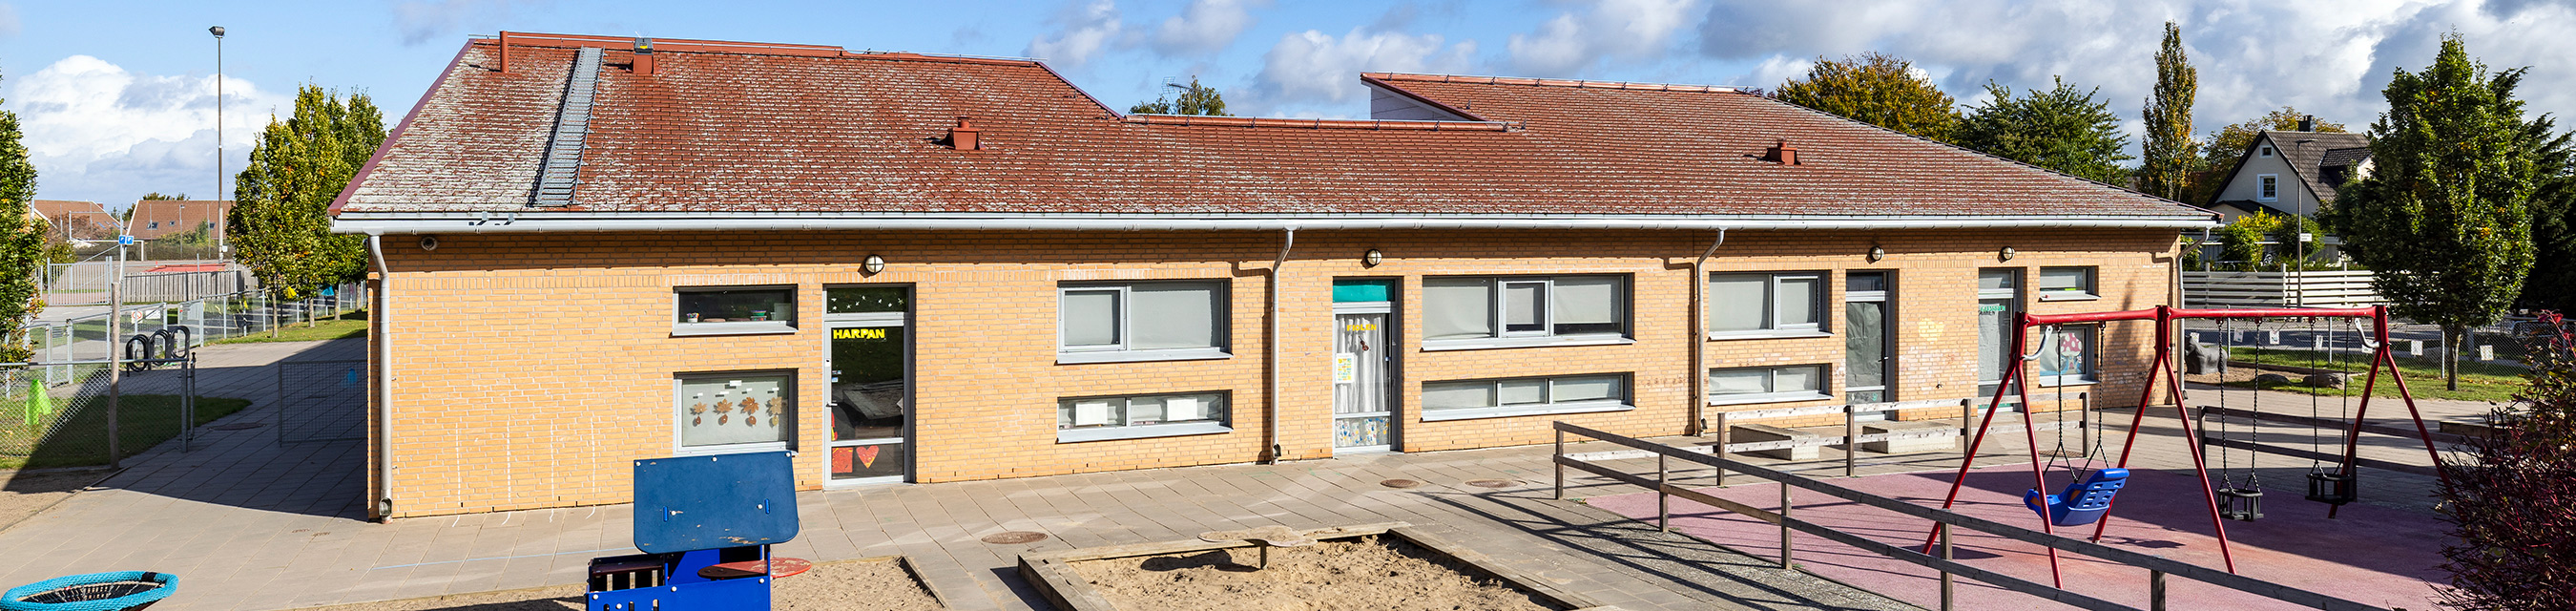 Maryhills förskola är byggd i ett plan och har sex avdelningar.